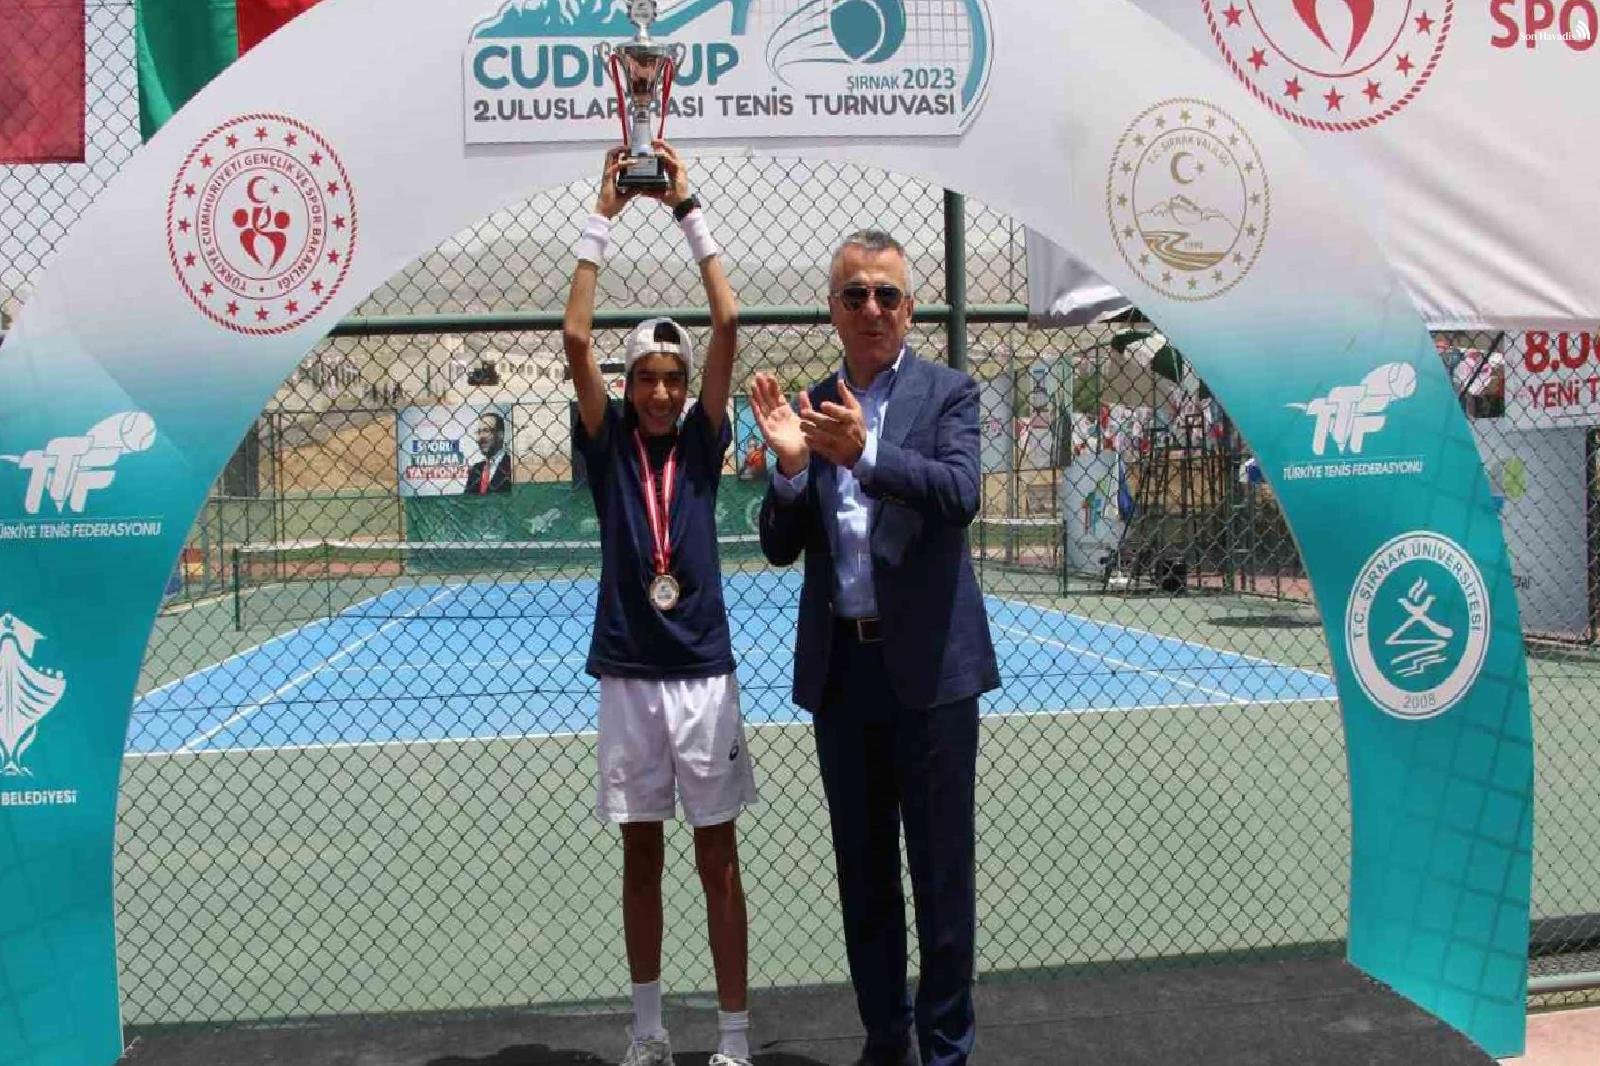 Şırnak'ta düzenlenen 2. Uluslararası Cudi Cup Tenis turnuvası sona erdi